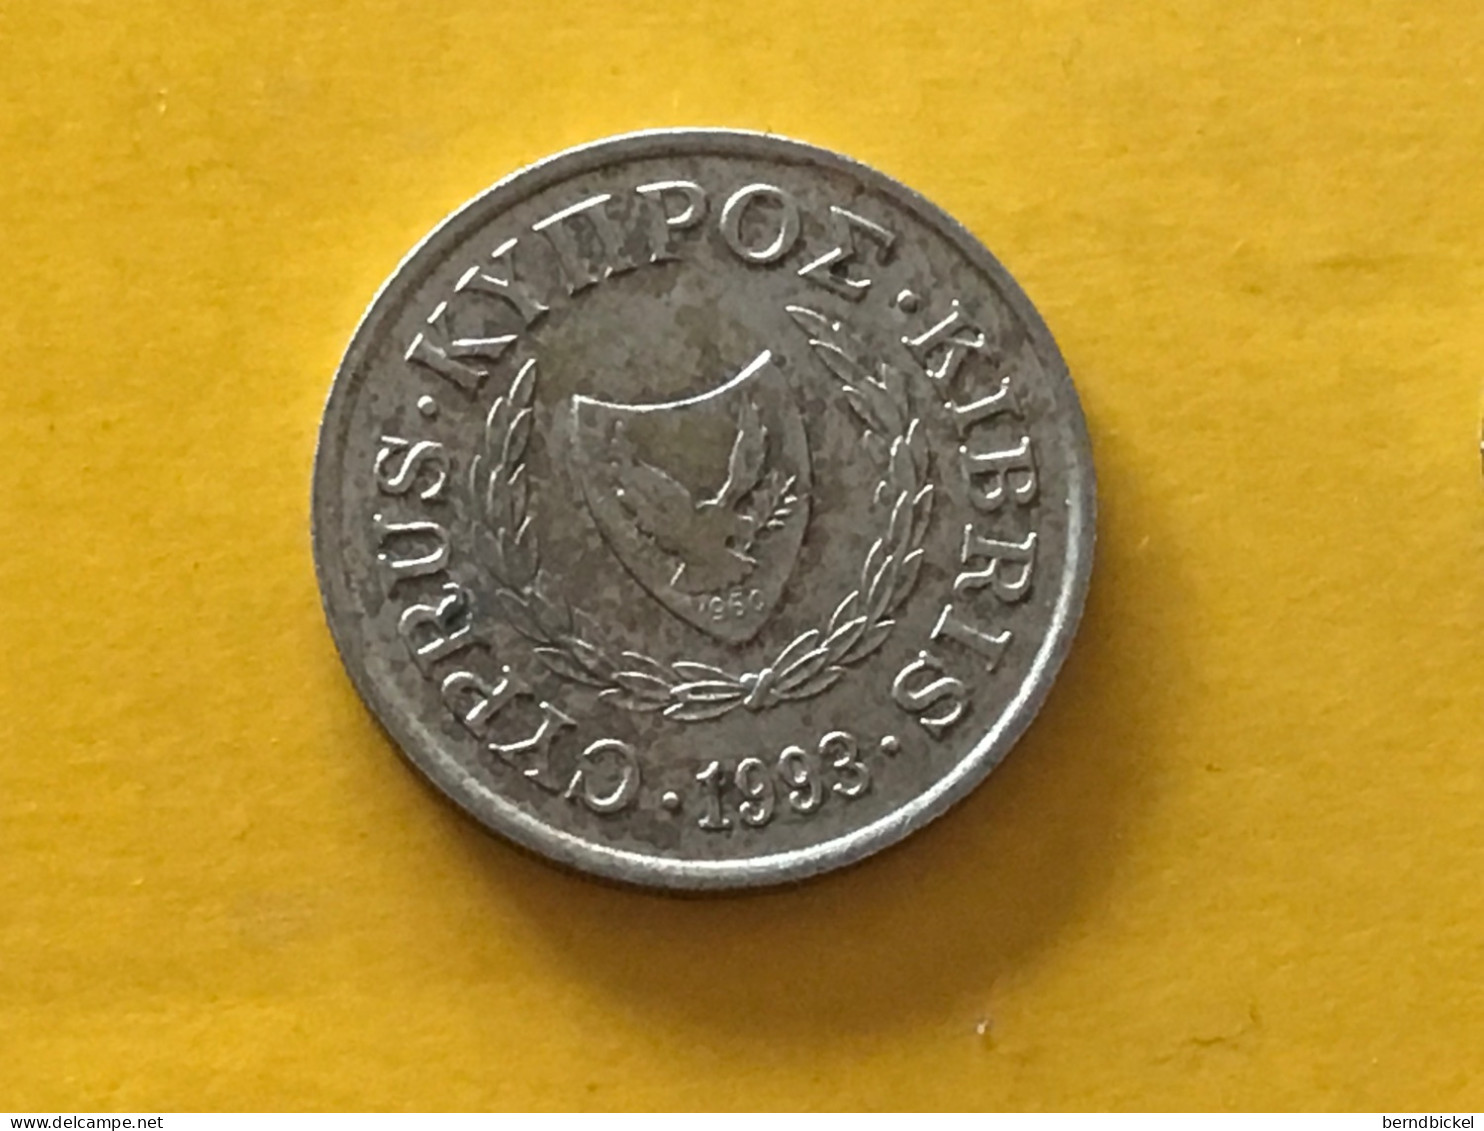 Münze Münzen Umlaufmünze Zypern 10 Cent 1993 - Chypre